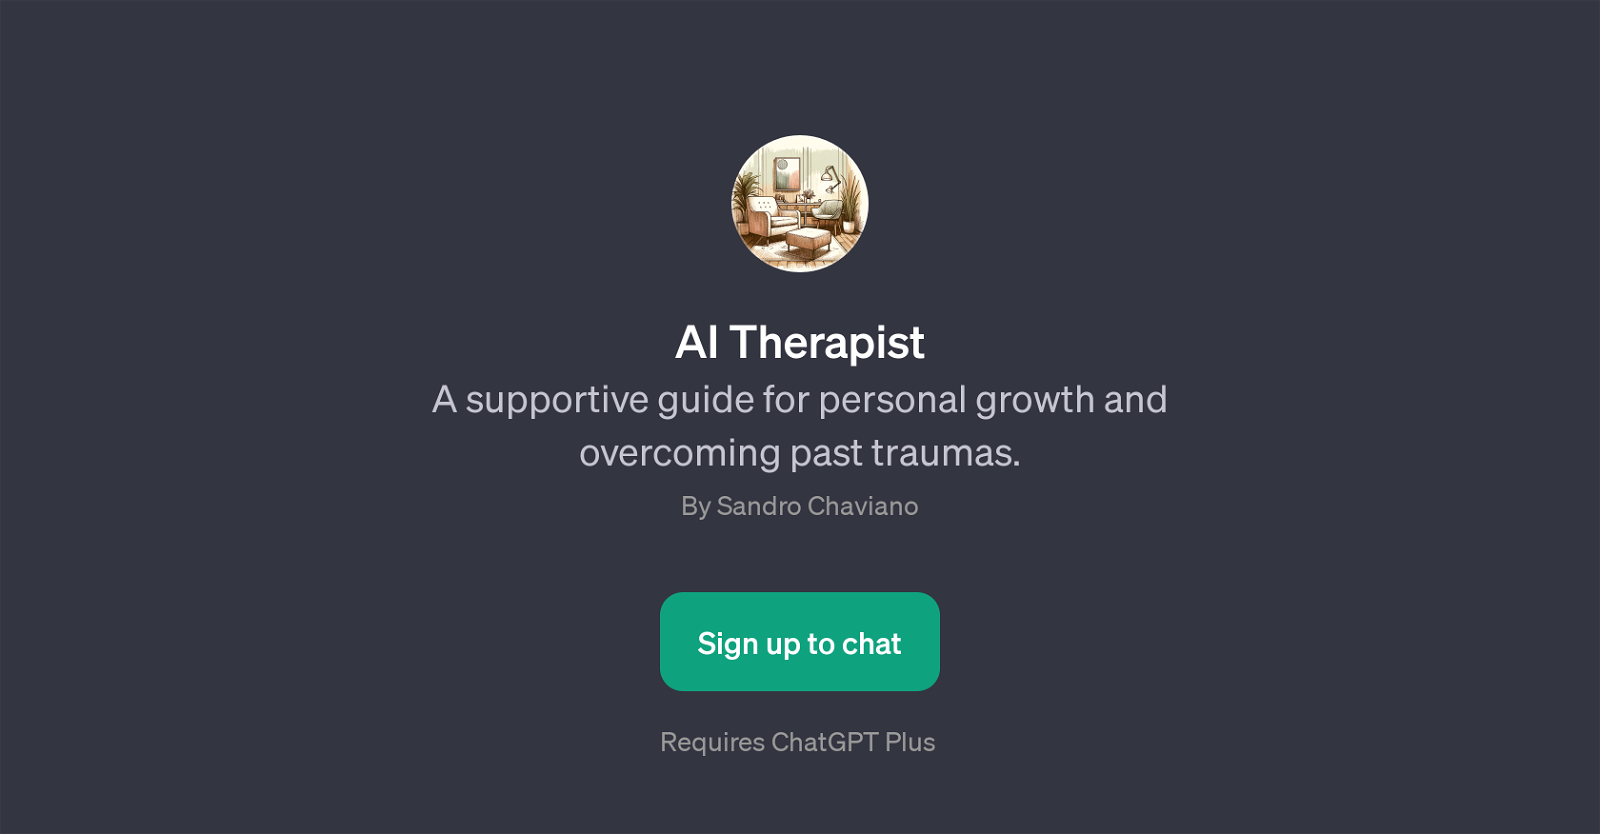 AI Therapist website